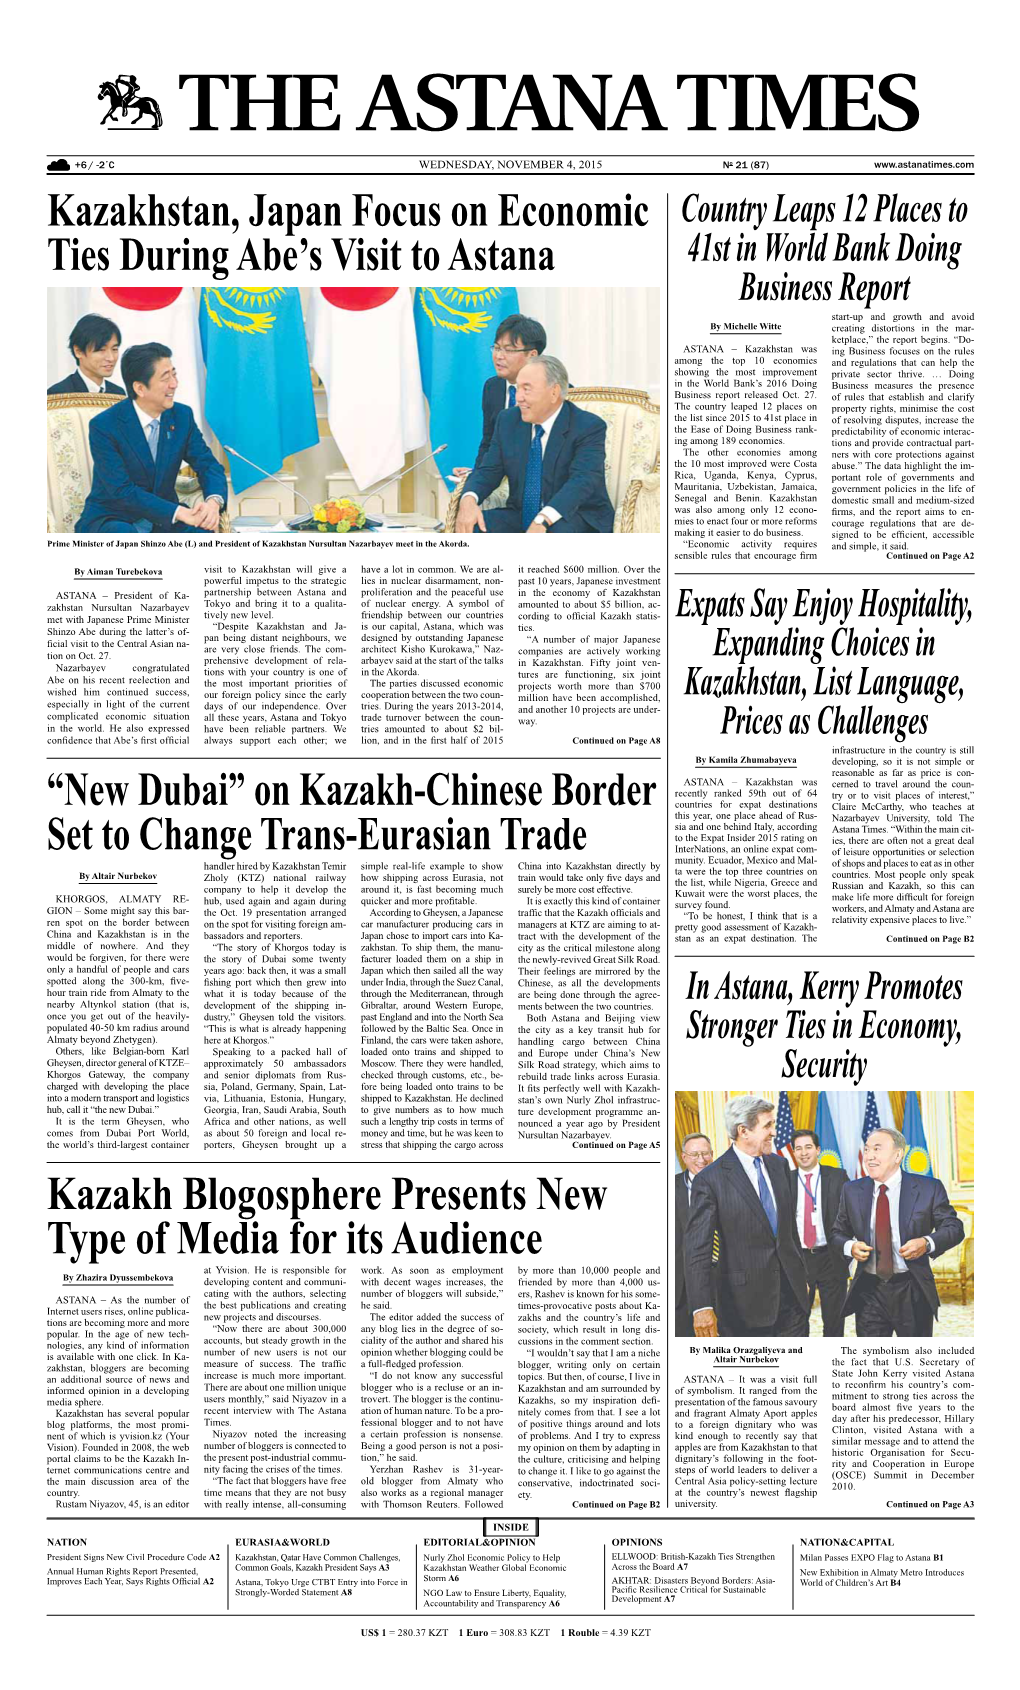 Kazakhstan, Japan Focus on Economic Ties During Abe's Visit To